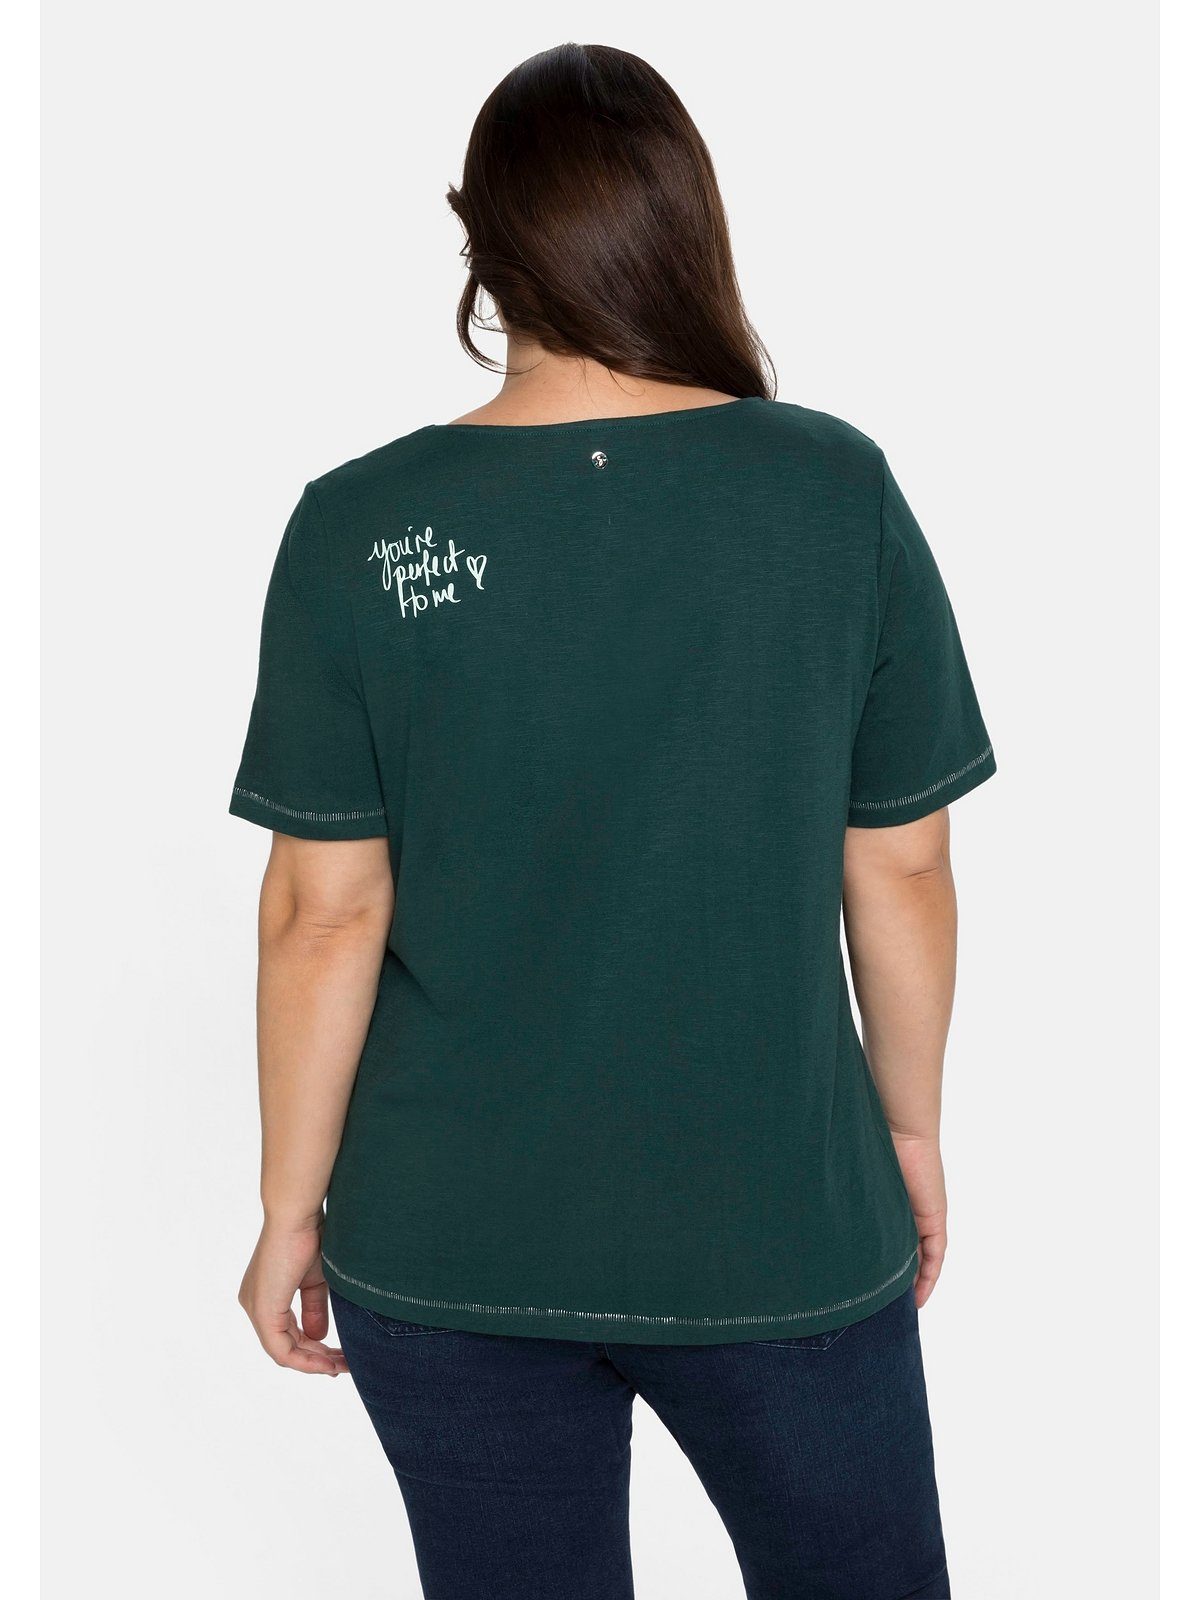 tiefgrün Große auf hinten mit der T-Shirt Sheego Größen Schulter Print